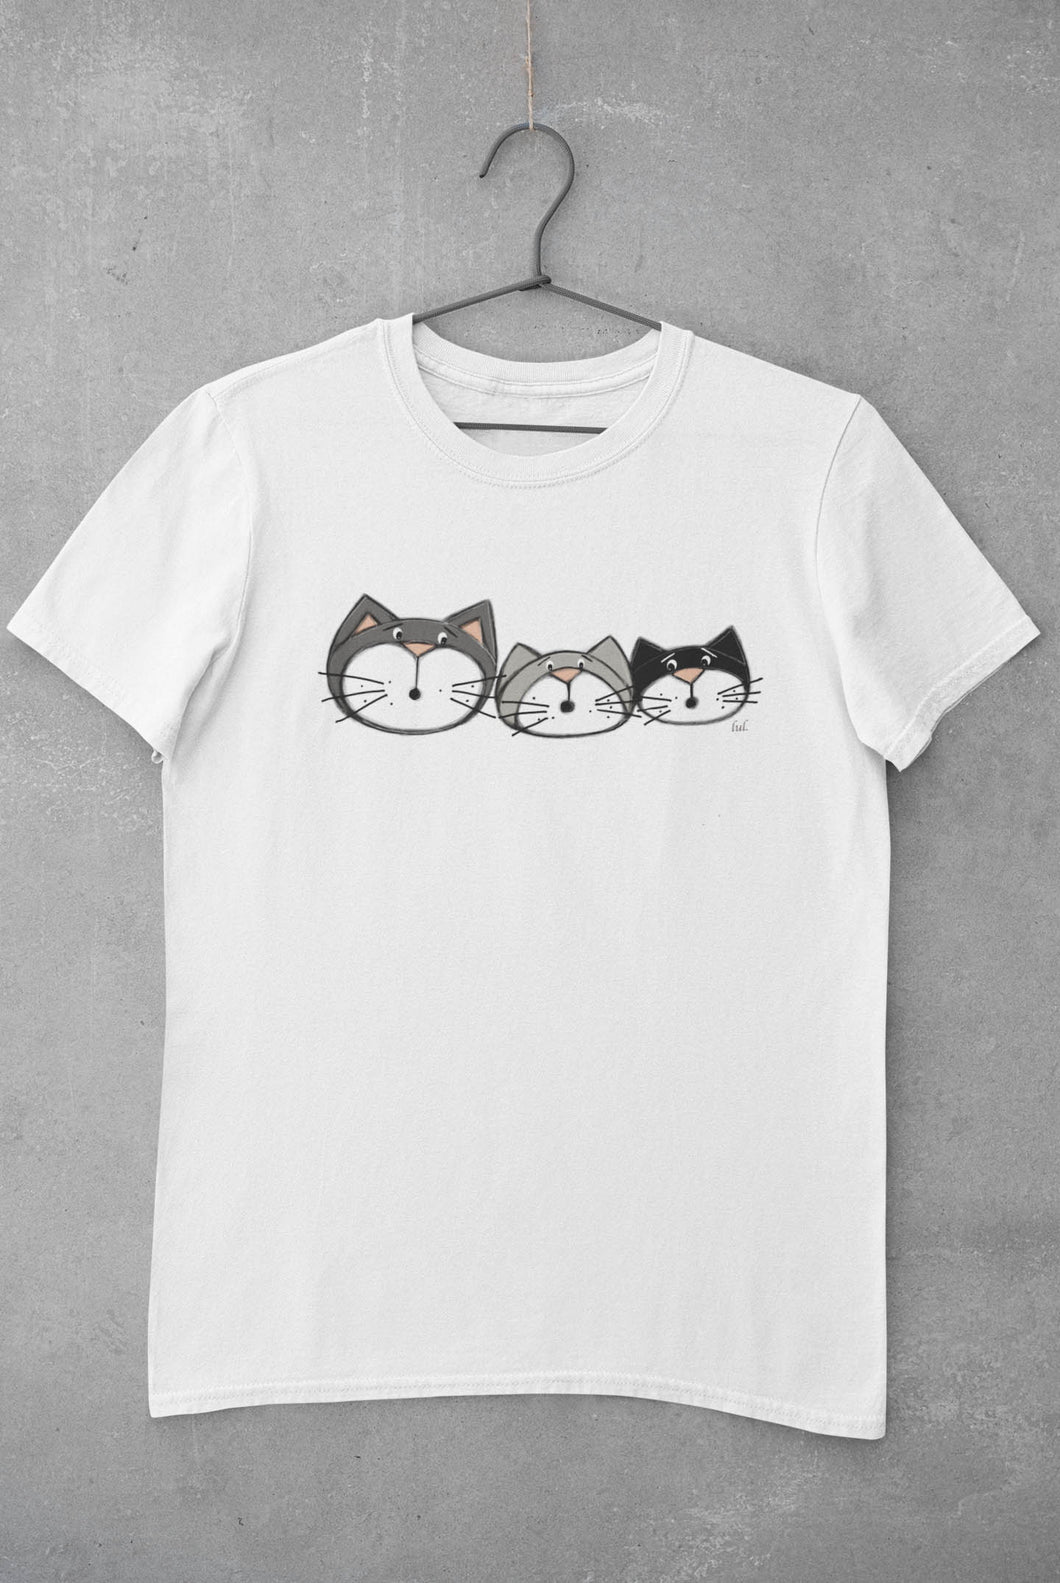 Women's t-shirt cats